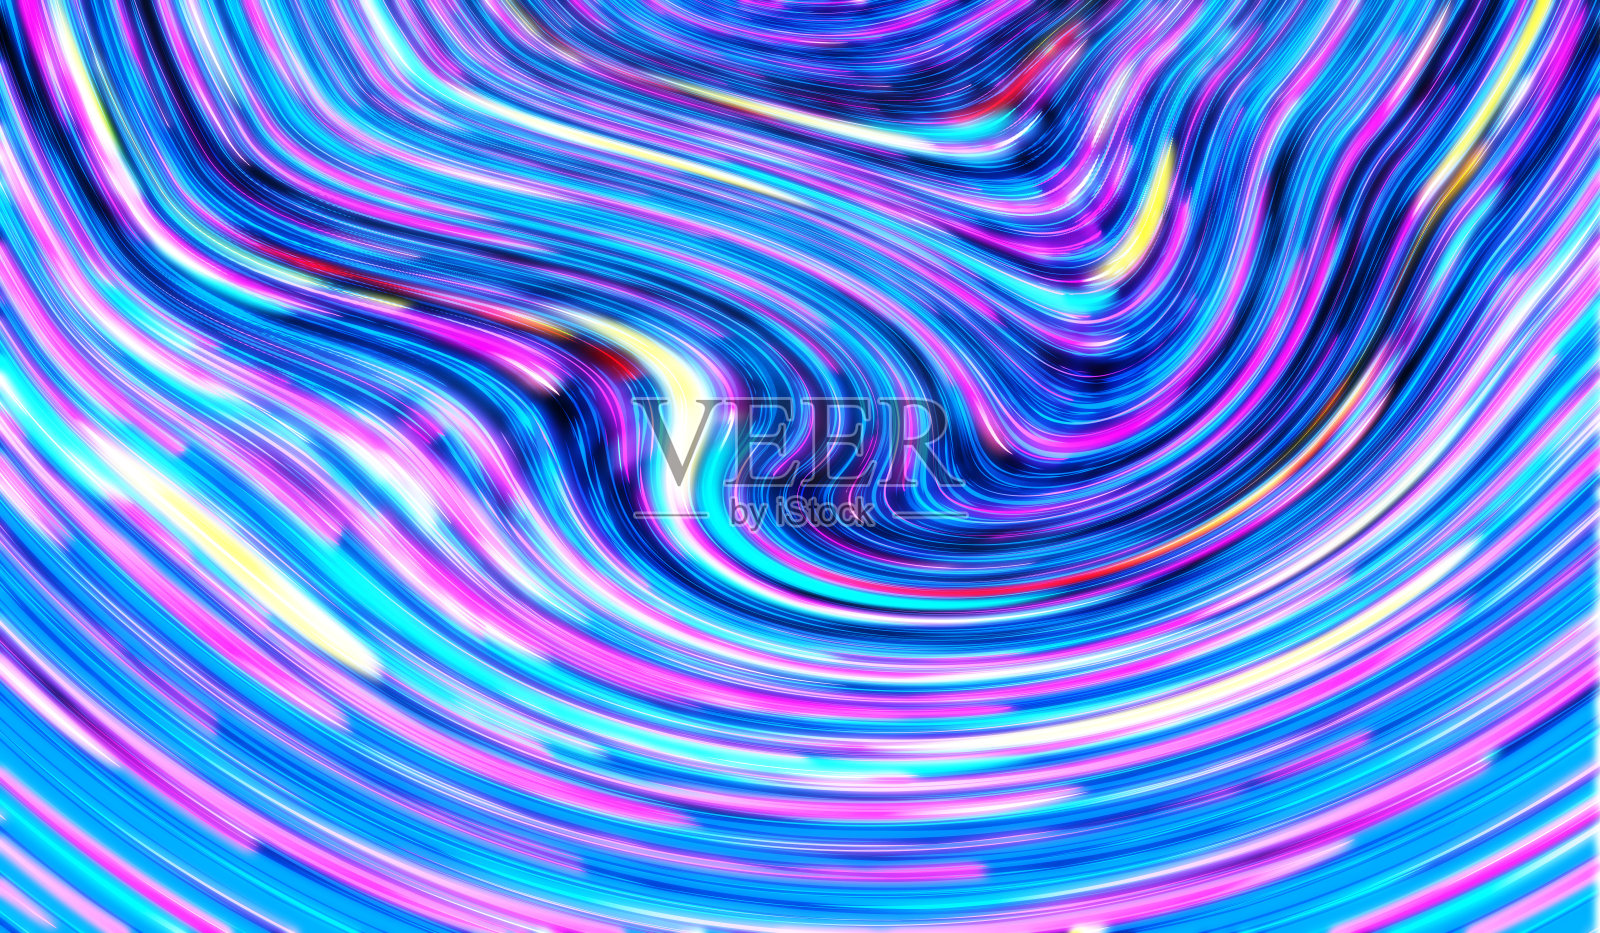 全息金属箔彩虹波抽象纹理背景。插画图片素材